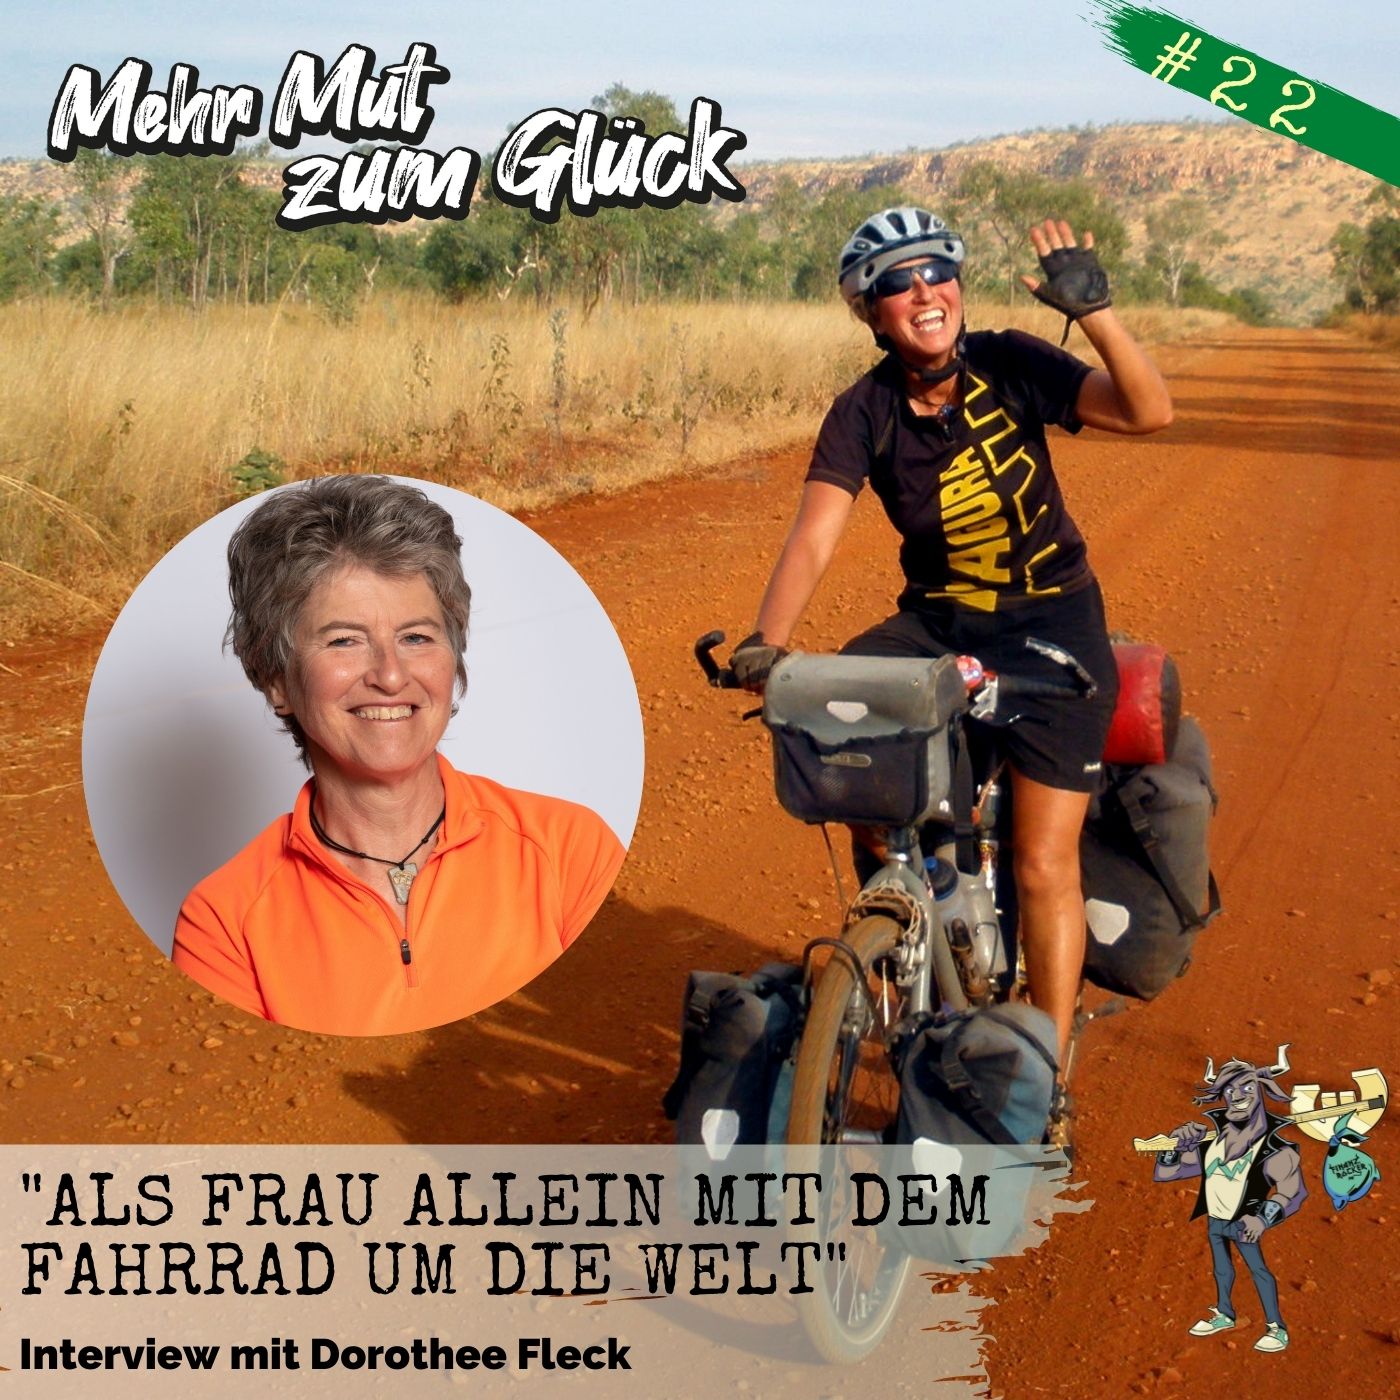 Folge 22: ”Als Frau allein mit dem Fahrrad um die Welt” - Interview mit Dorothee Fleck